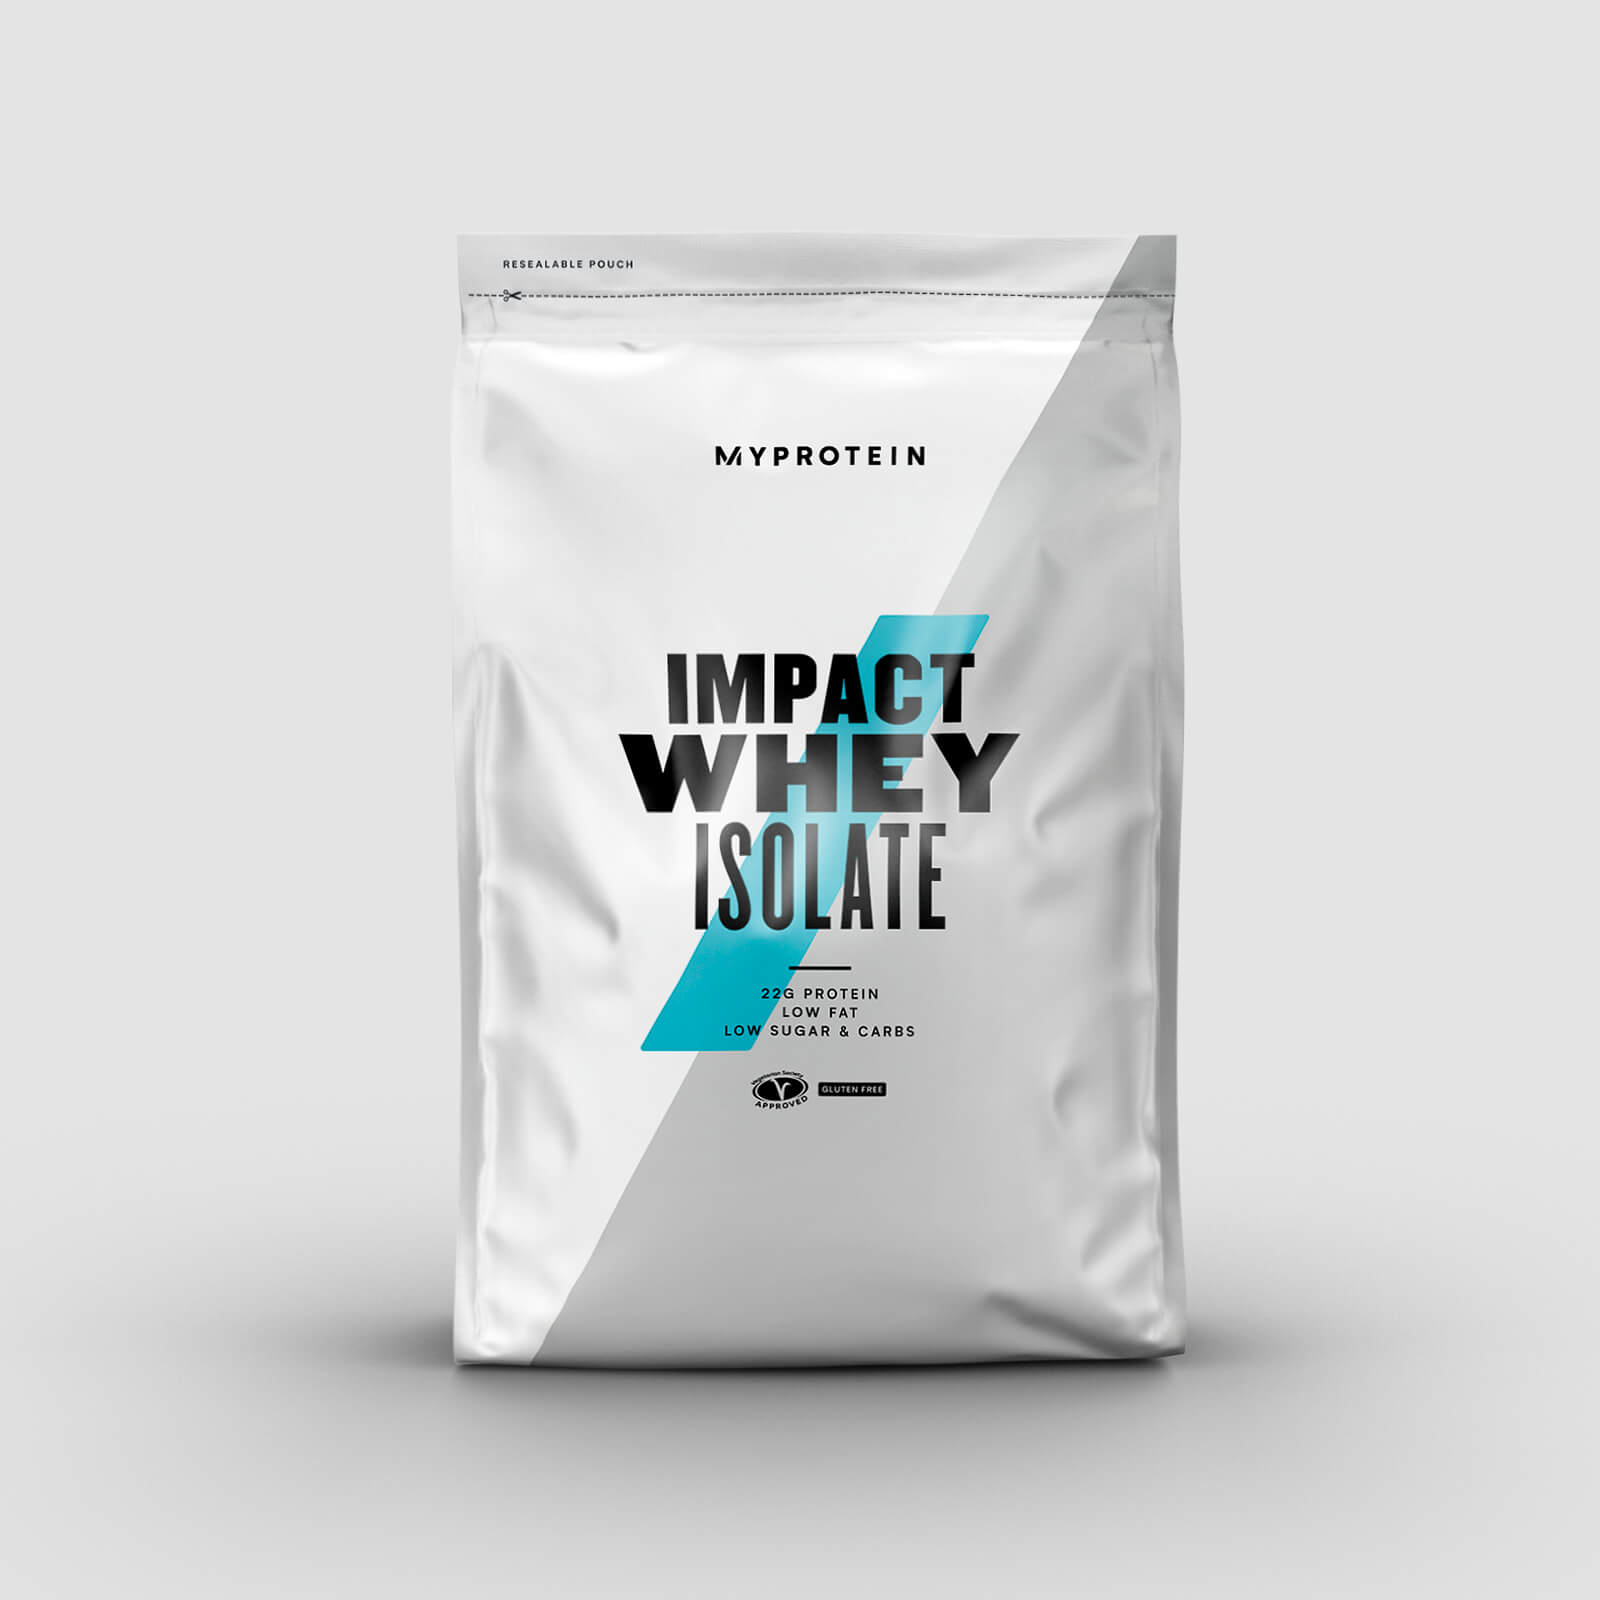 Myprotein Impact Whey Isolate - 2.5kg - Burro di arachidi al cioccolato